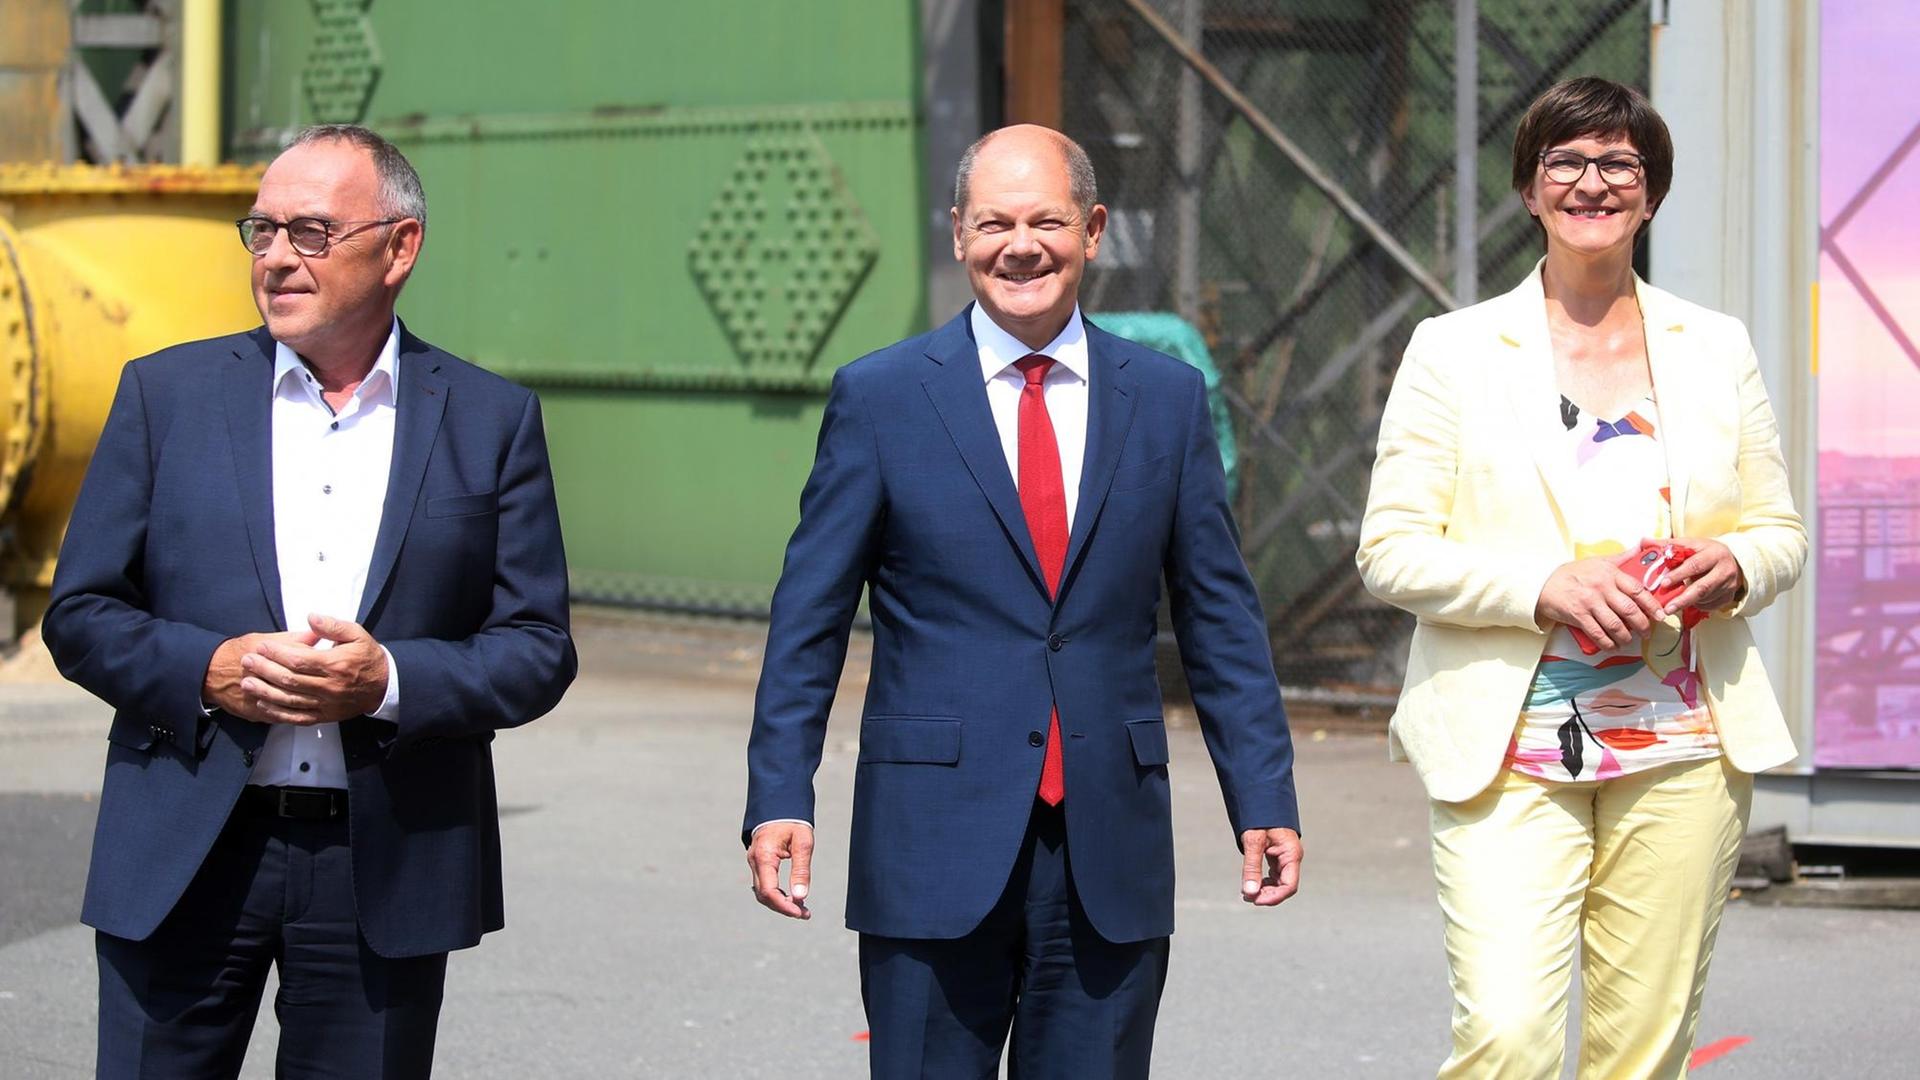 Die SPD-Spitze hat Vizekanzler Olaf Scholz (Mitte) auf Vorschlag der Vorsitzenden Norbert Walter-Borjans (l.) und Saskia Esken (r.) als Kanzlerkandidaten nominiert. Die drei laufen gemeinsam zu einer Pressekonferenz.